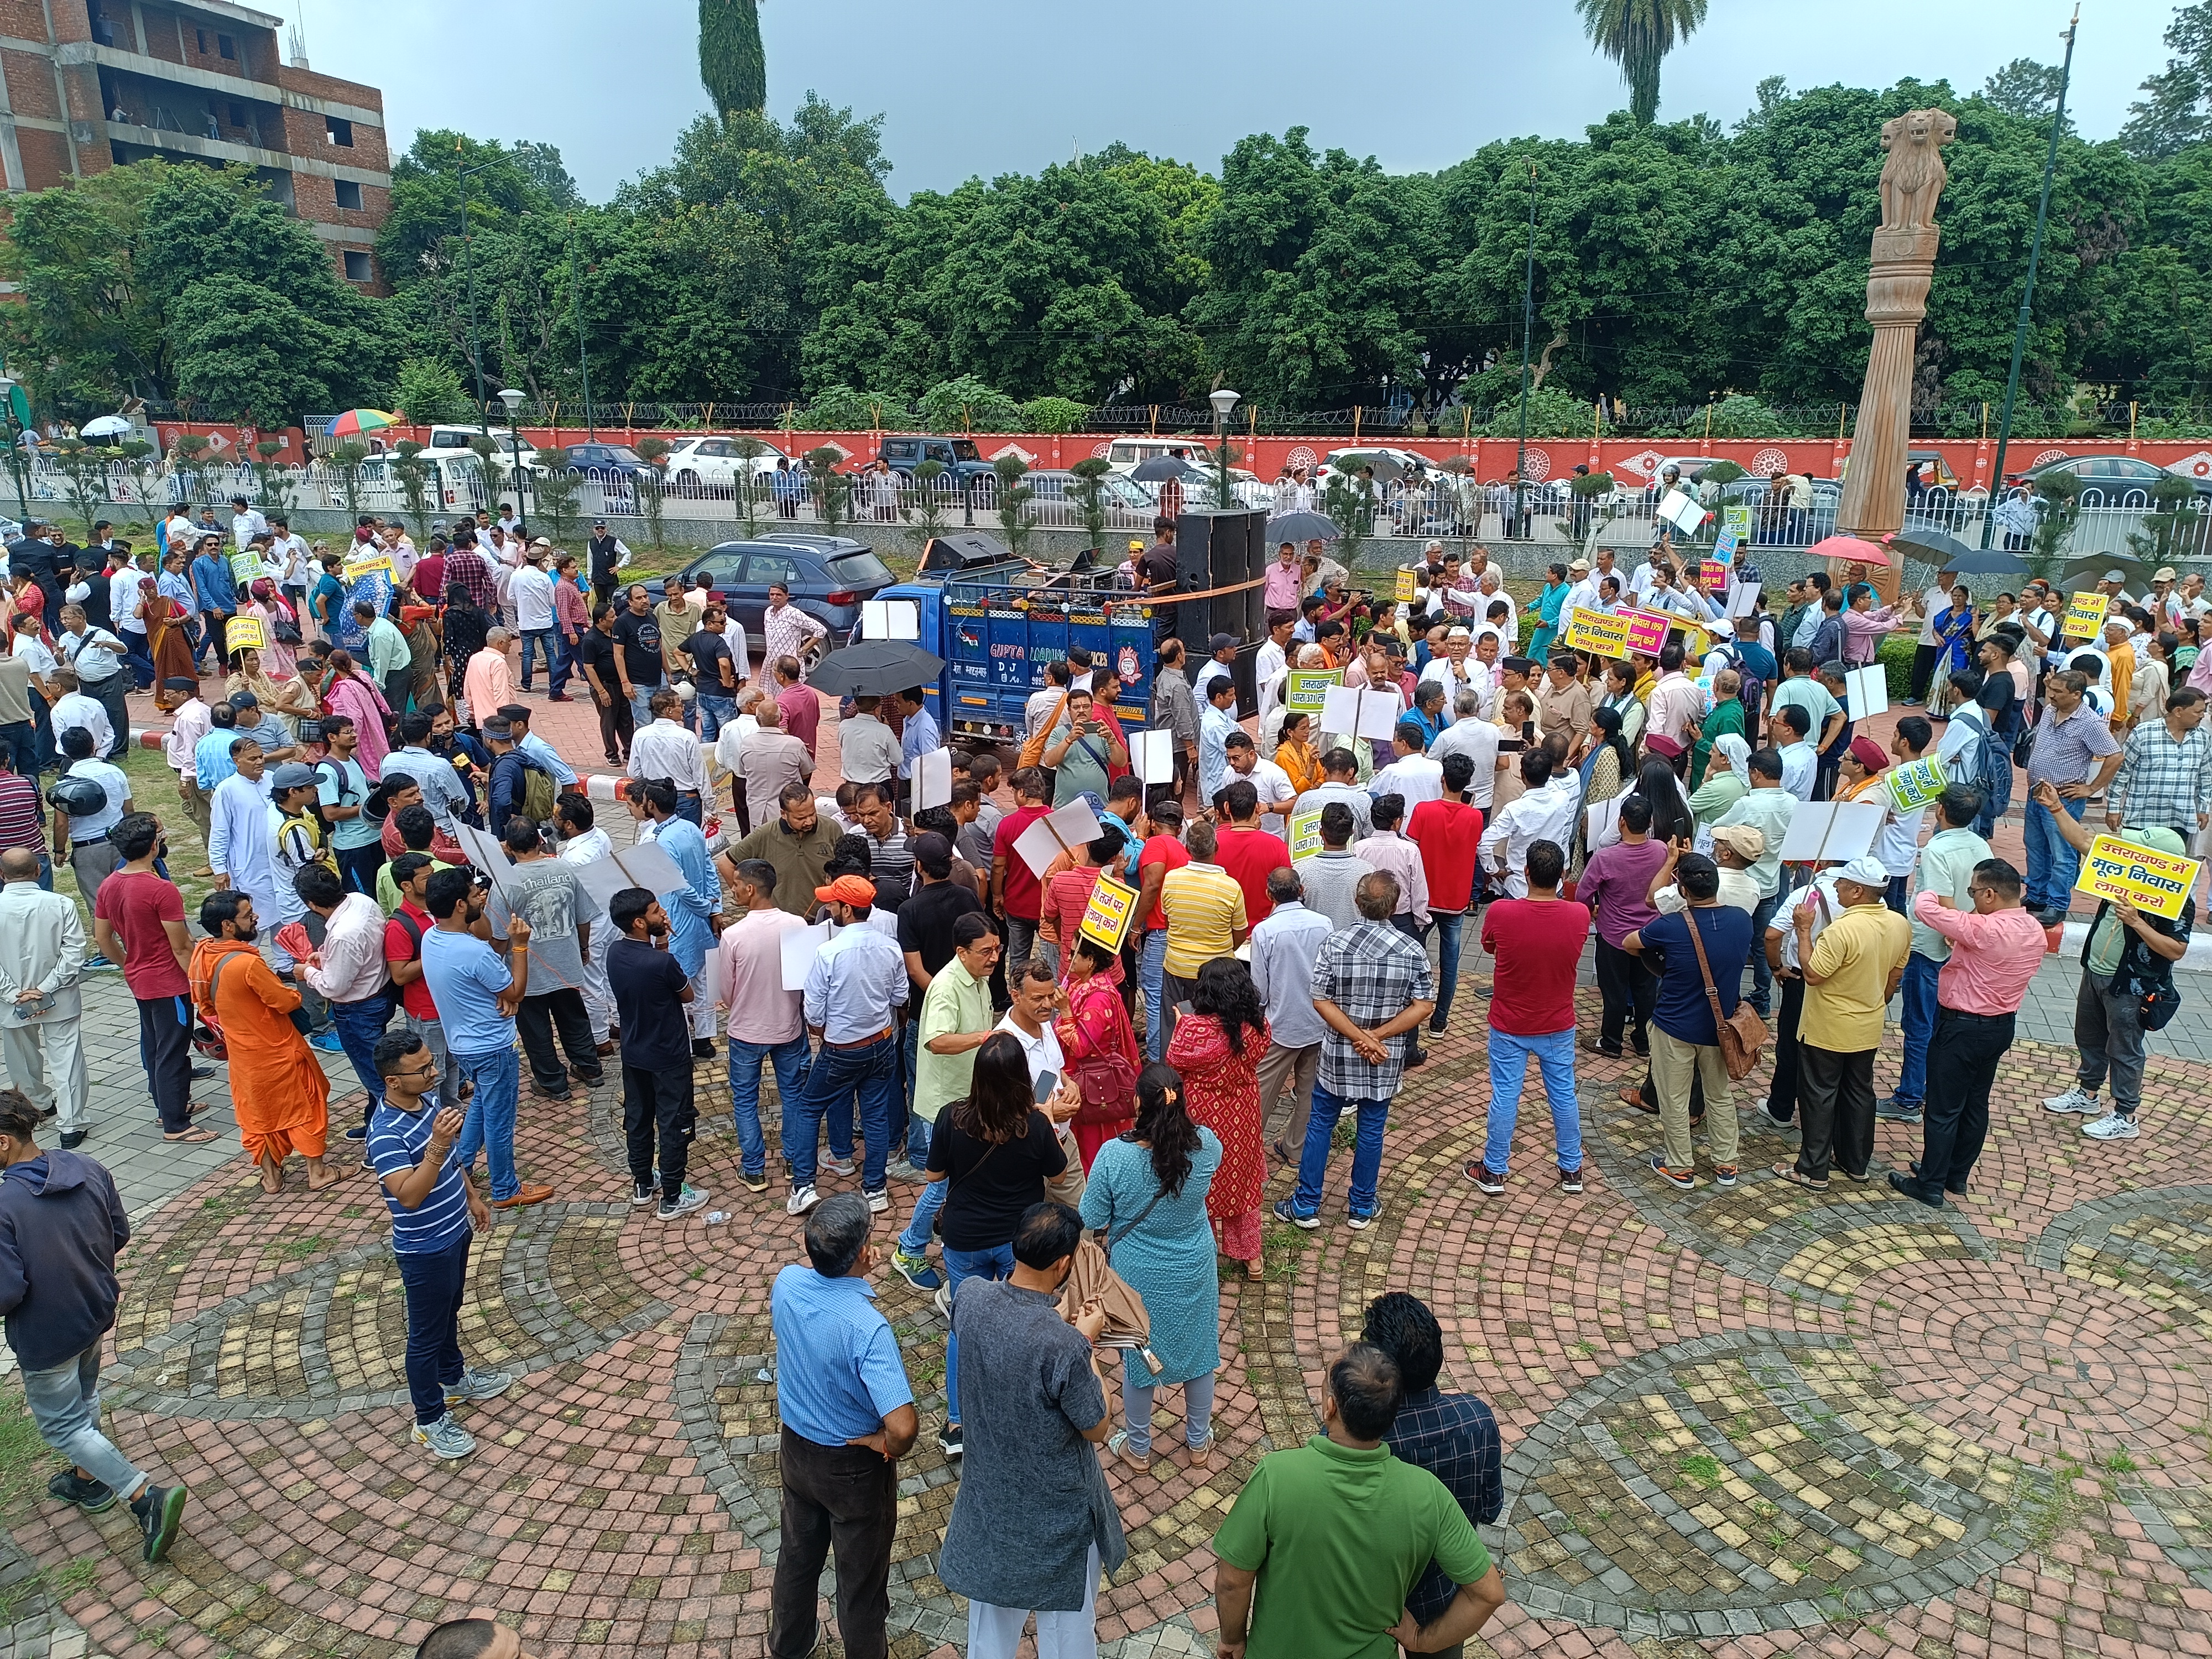 Uttarakhand State Movement Forum performed